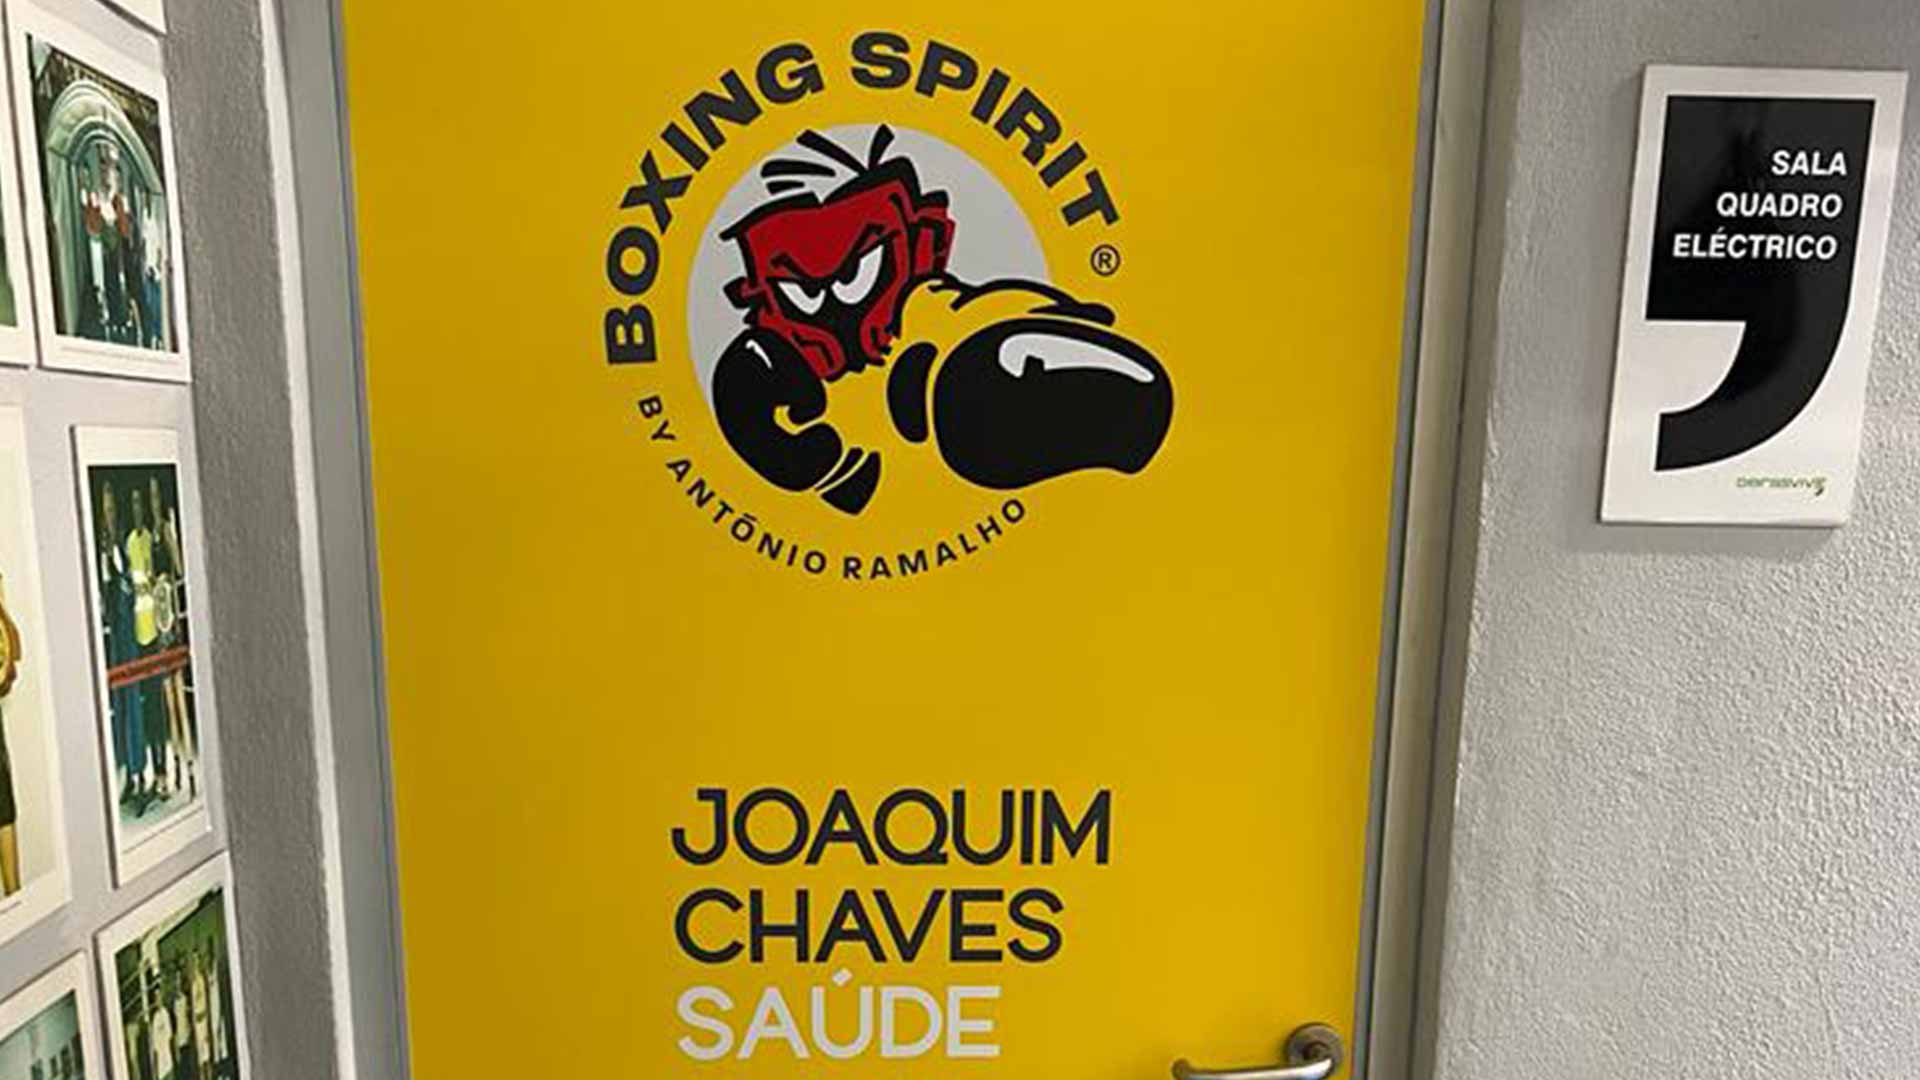 Door of the Boxing Spirit Association